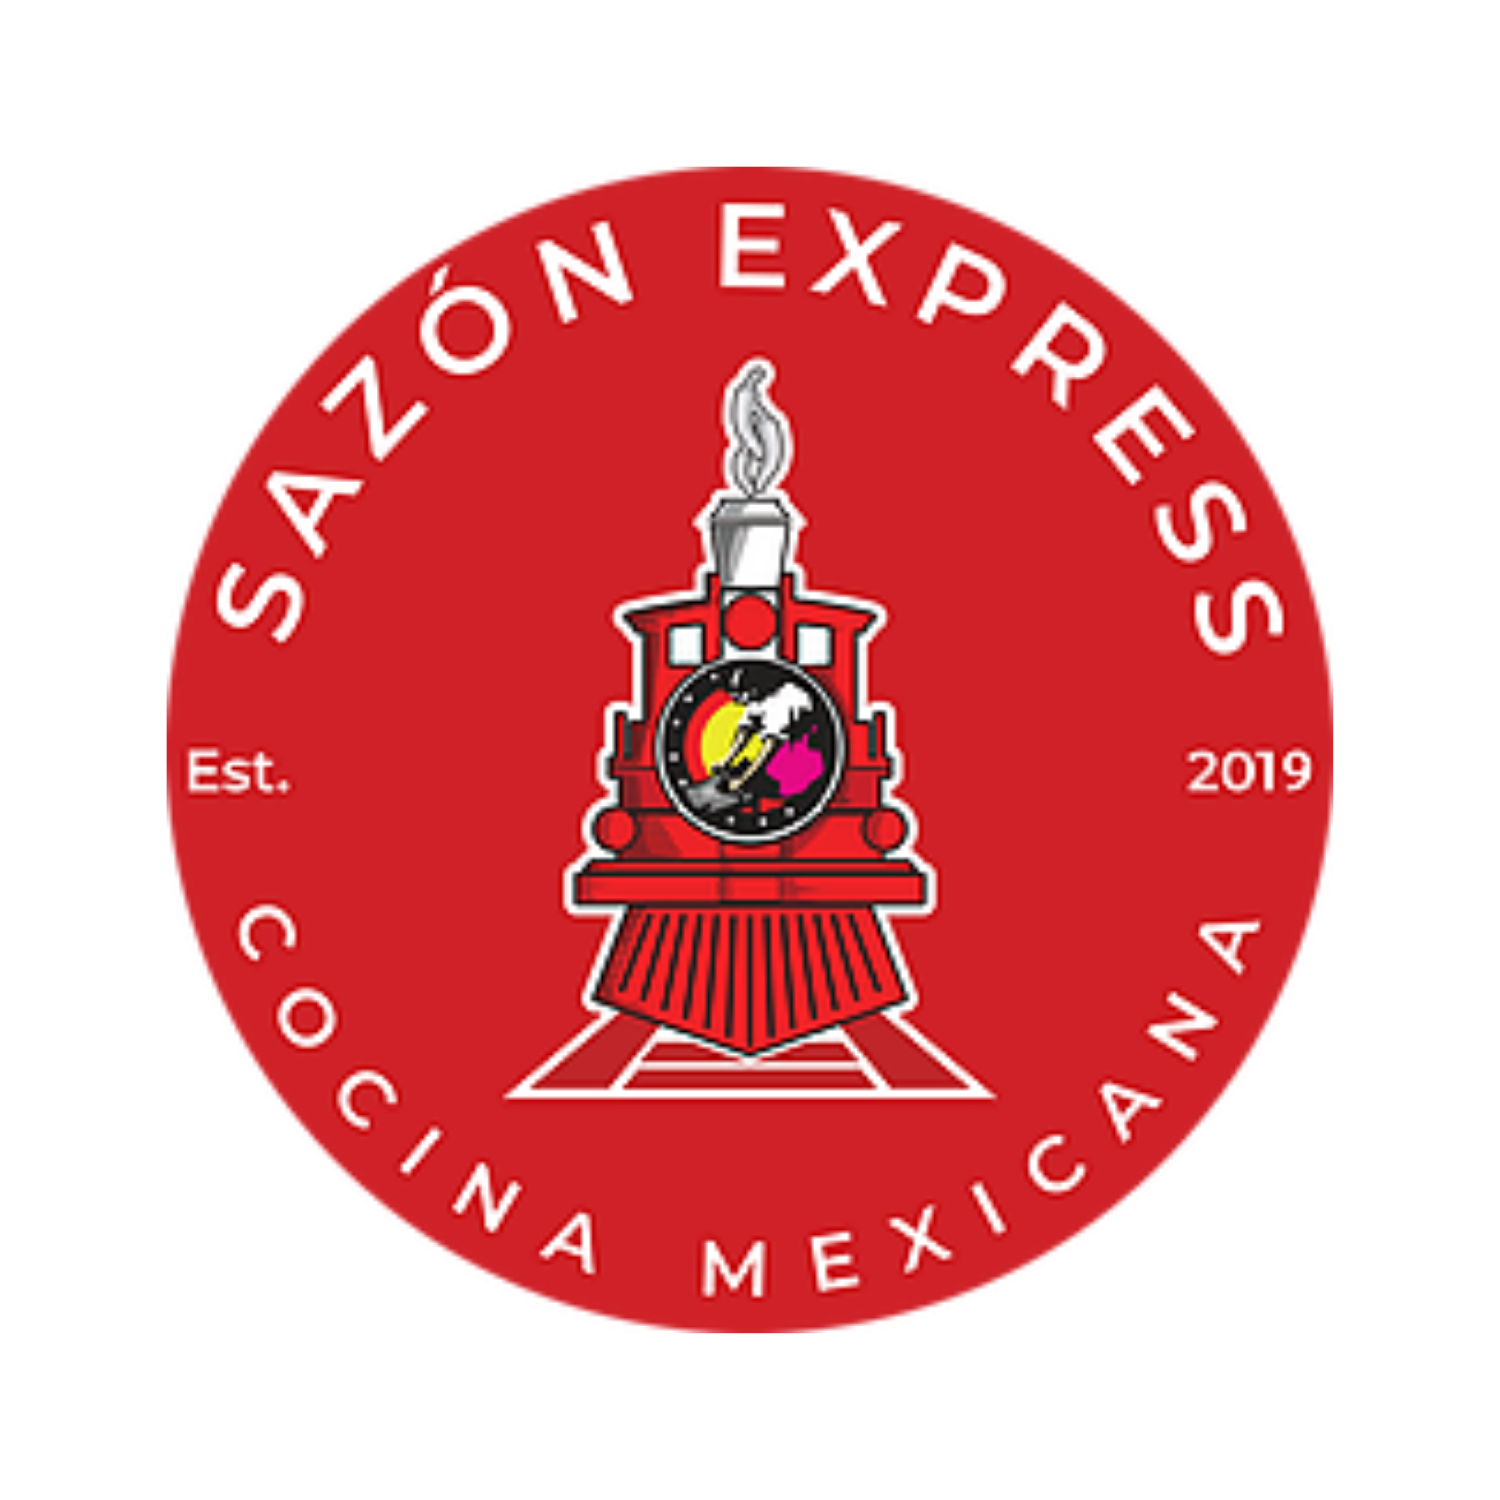 Sazón Express logo